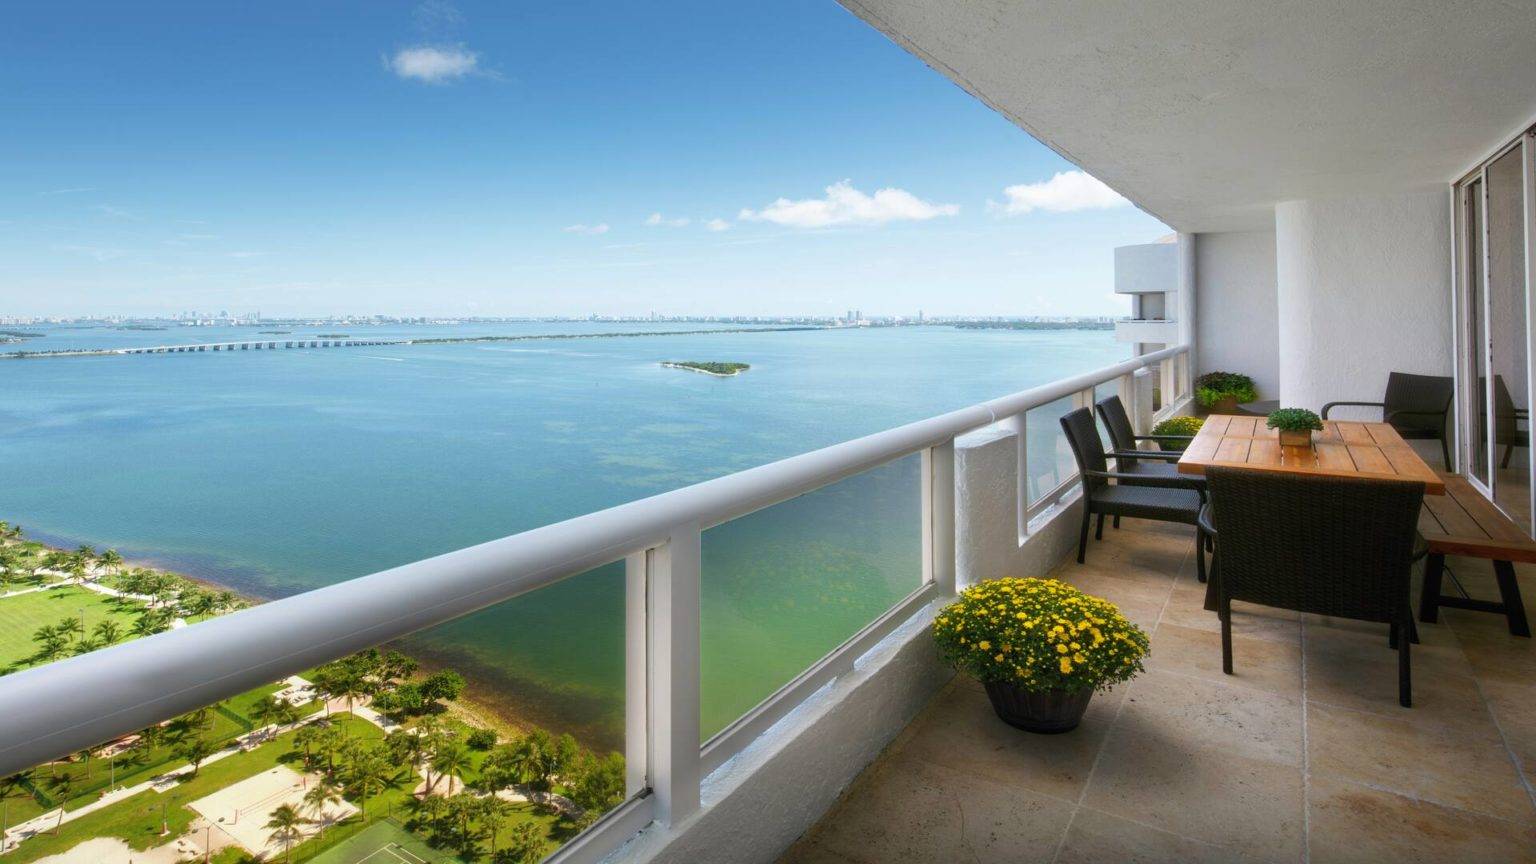 4 bedroom condo balcony overlooking the ocean at Grand Hotel Biscaye Bay